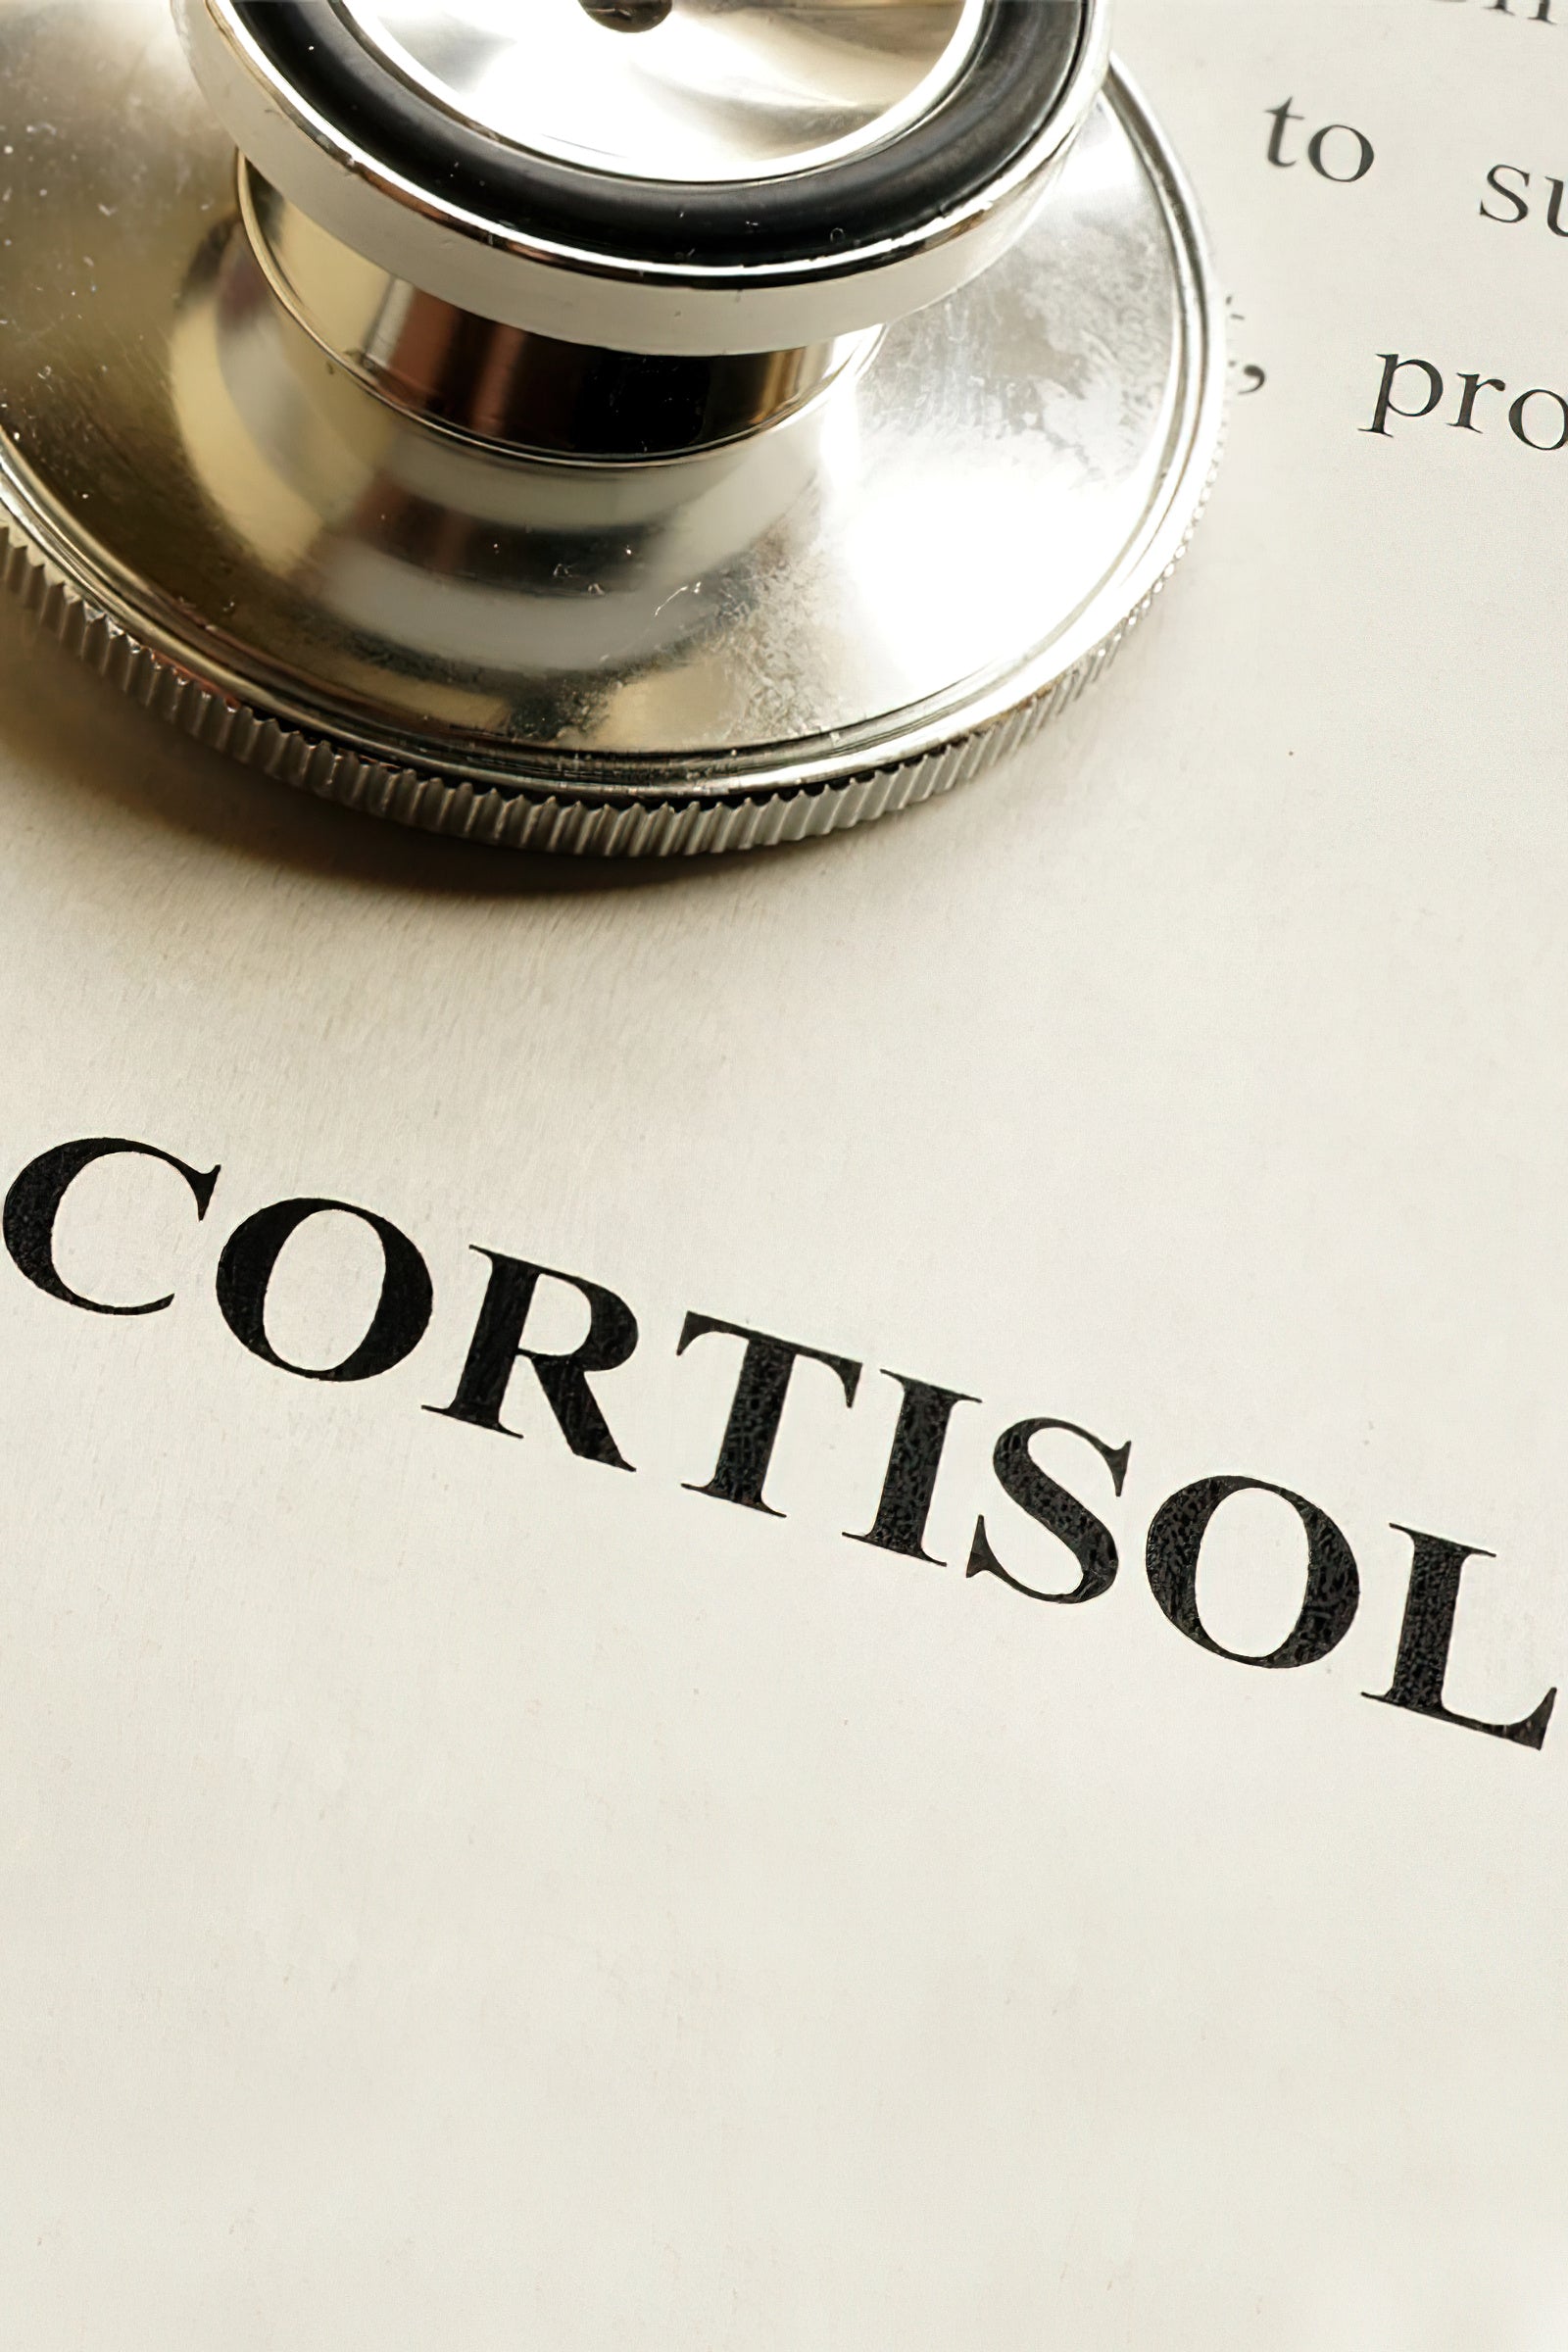 Die zwei Gesichter von Kortisol